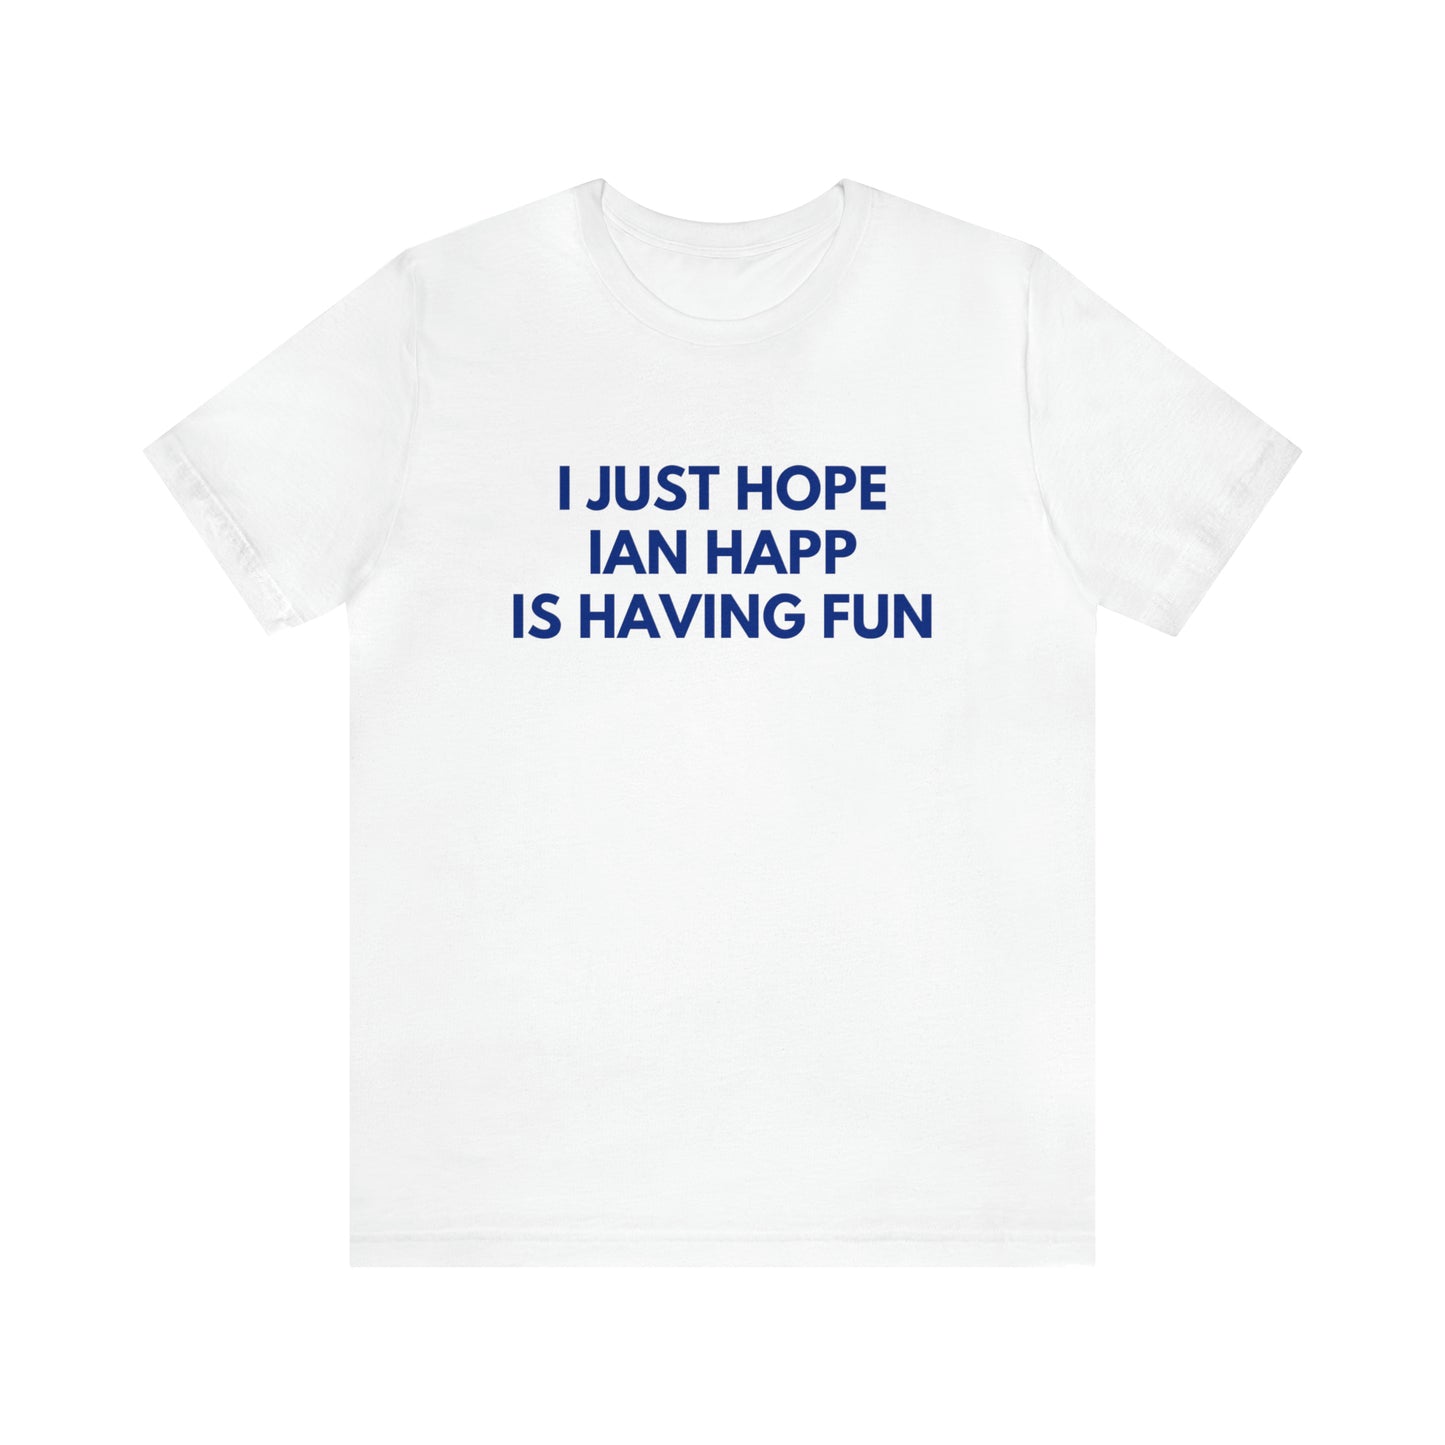 Ian Happ Having Fun - Unisex T-shirt